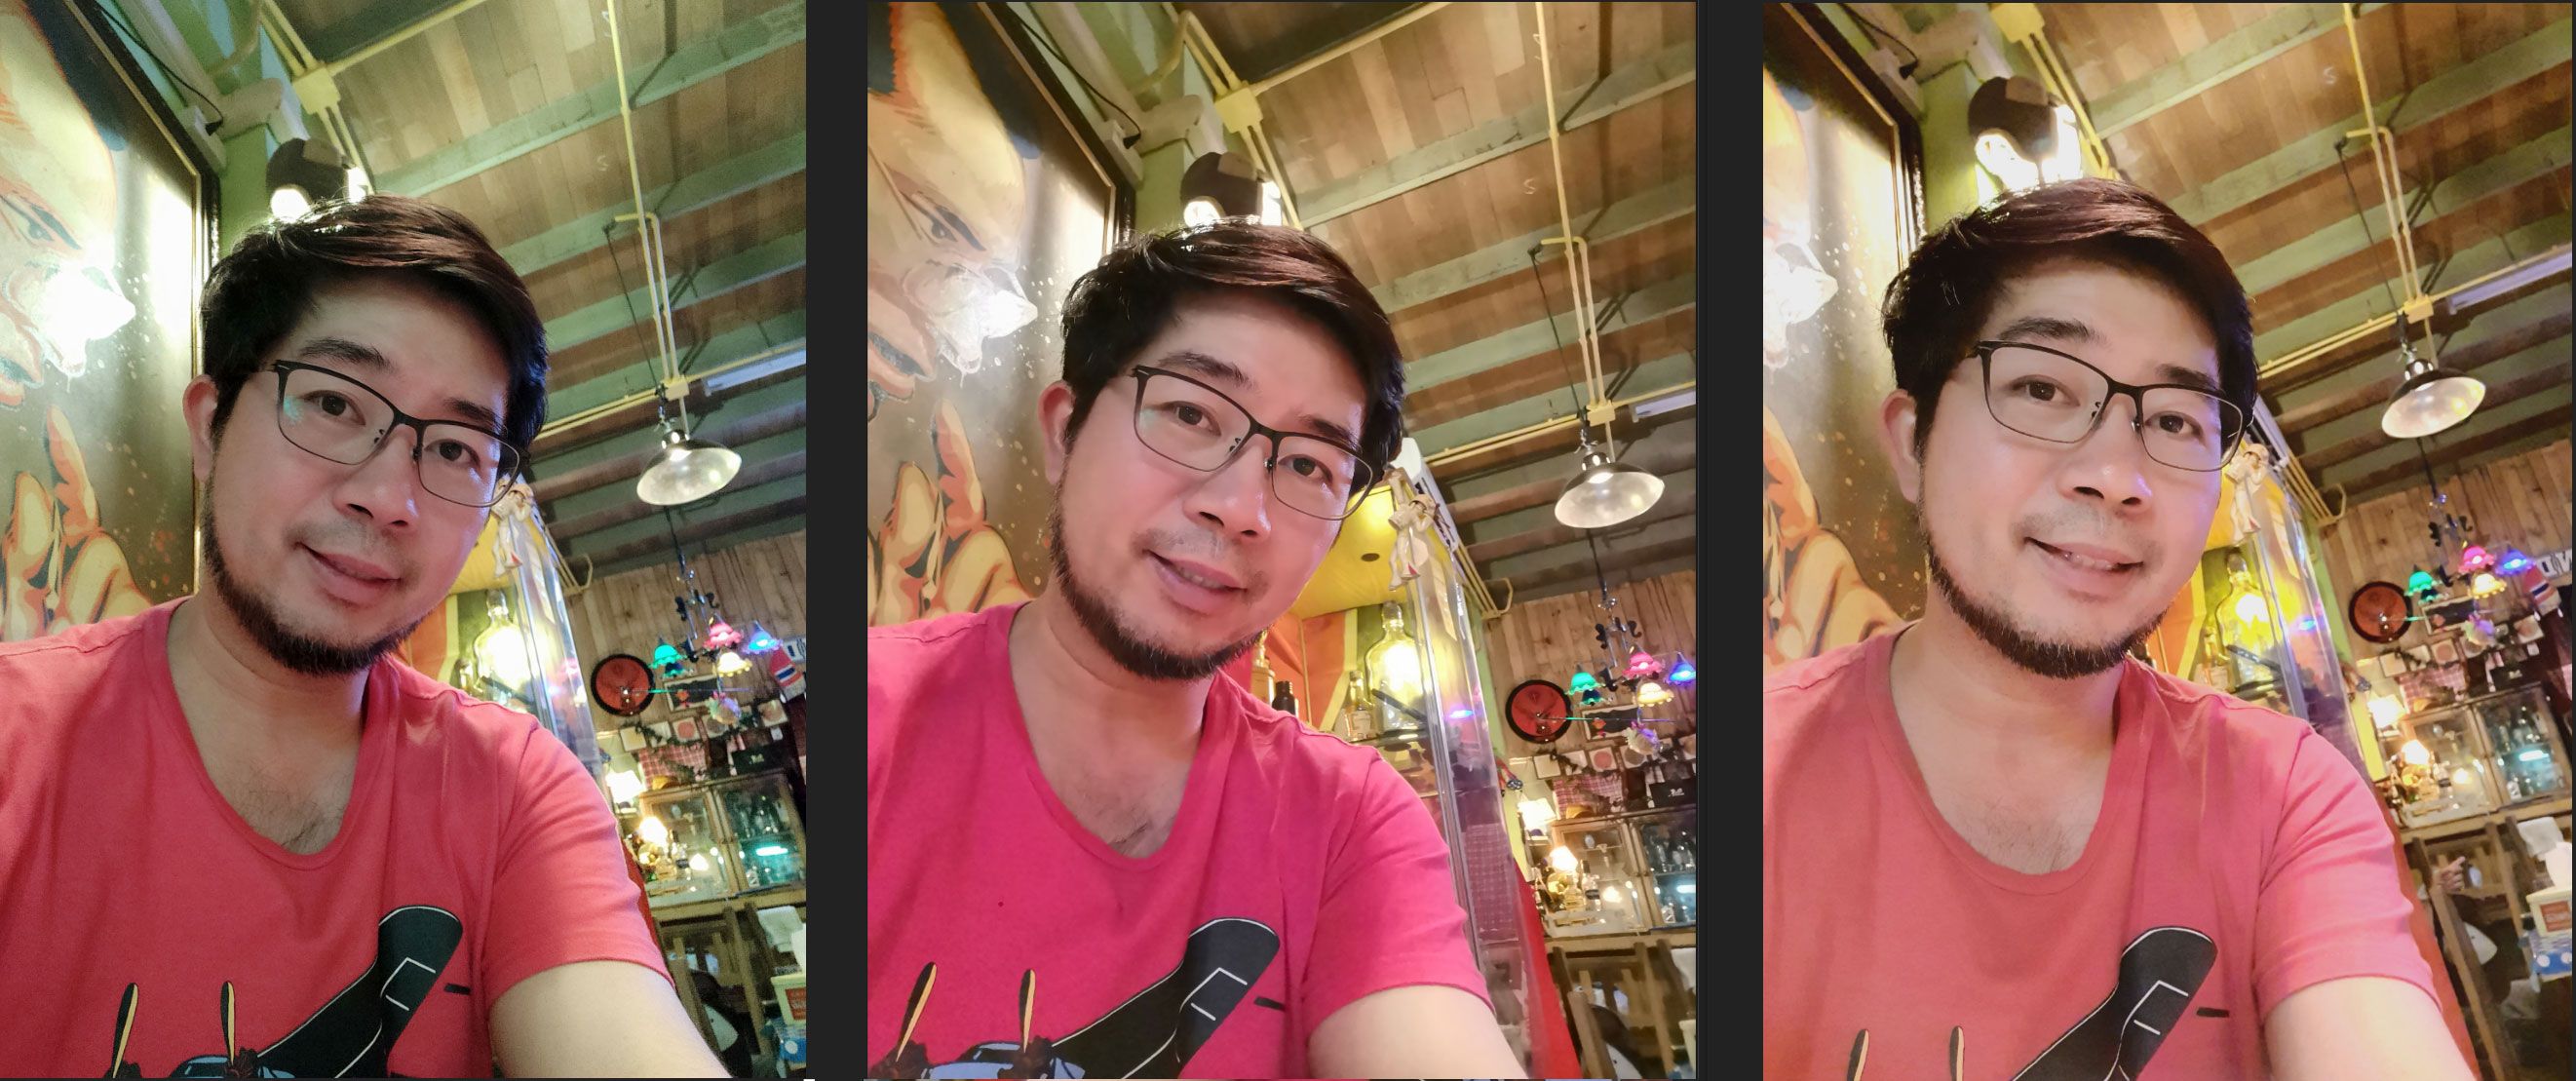 เปรียบเทียบกล้อง Huawei P30 Pro, Galaxy S10+ และ Xiaomi Mi 9 สีสันรายละเอียดเหมือนหรือต่างกันแค่ไหน